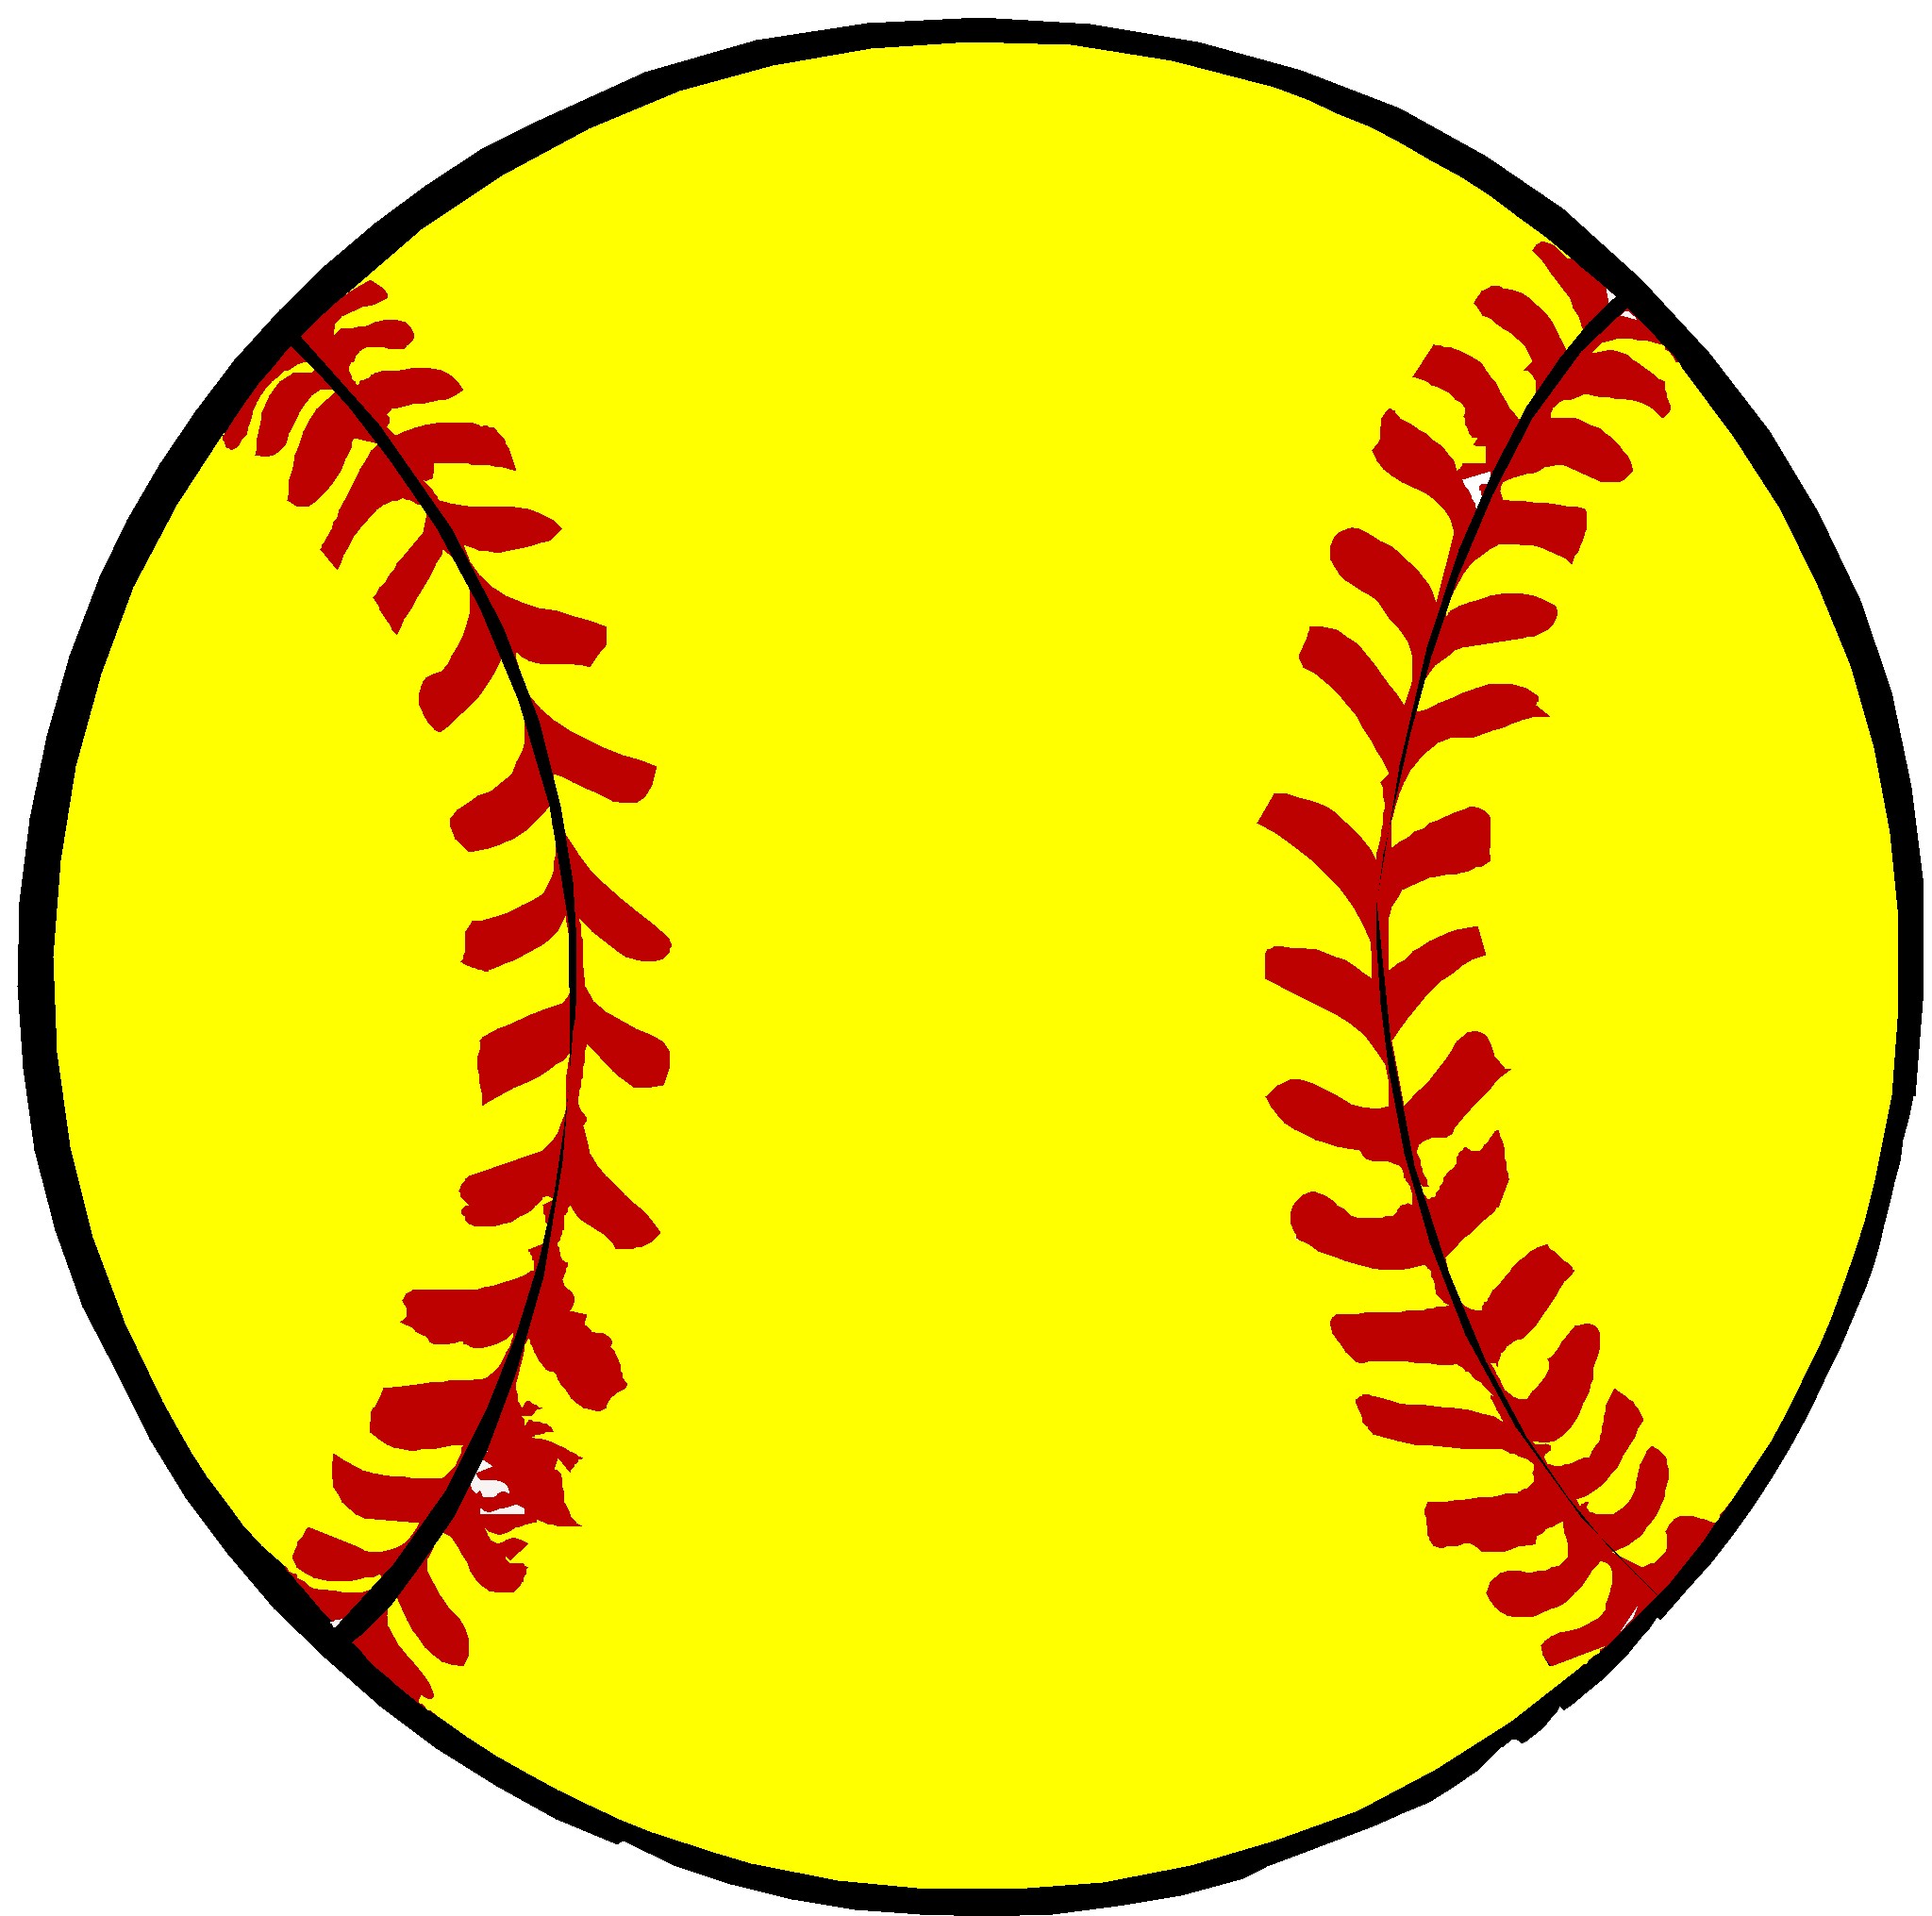 Softball clipart vector